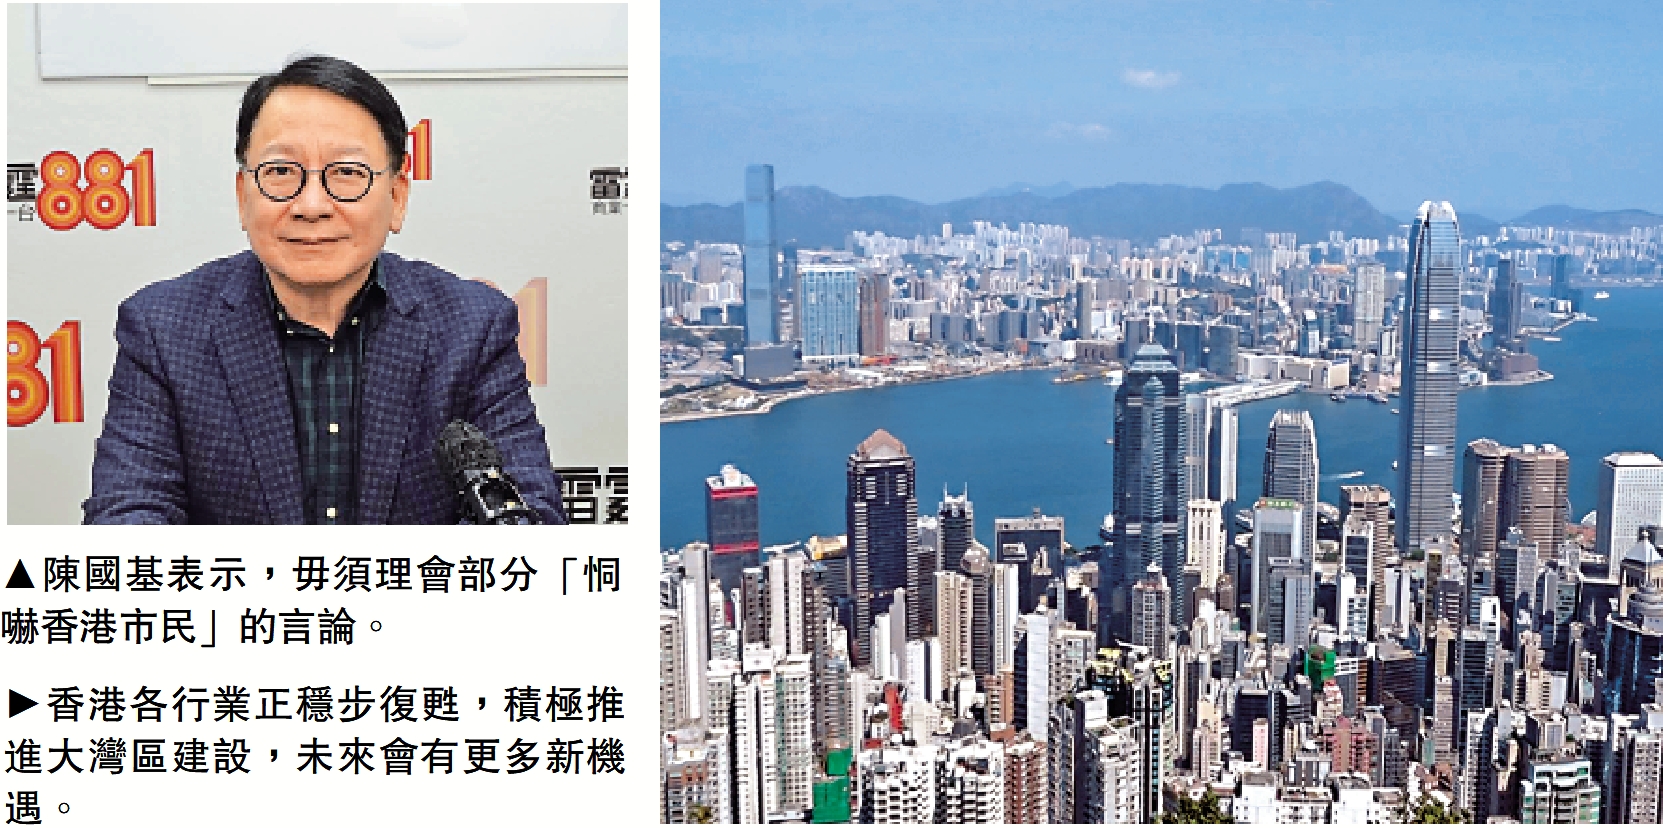 　　左圖：陳國基表示，毋須理會部分「恫嚇香港市民」的言論。右圖：香港各行業正穩步復甦，積極推進大灣區建設，未來會有更多新機遇。